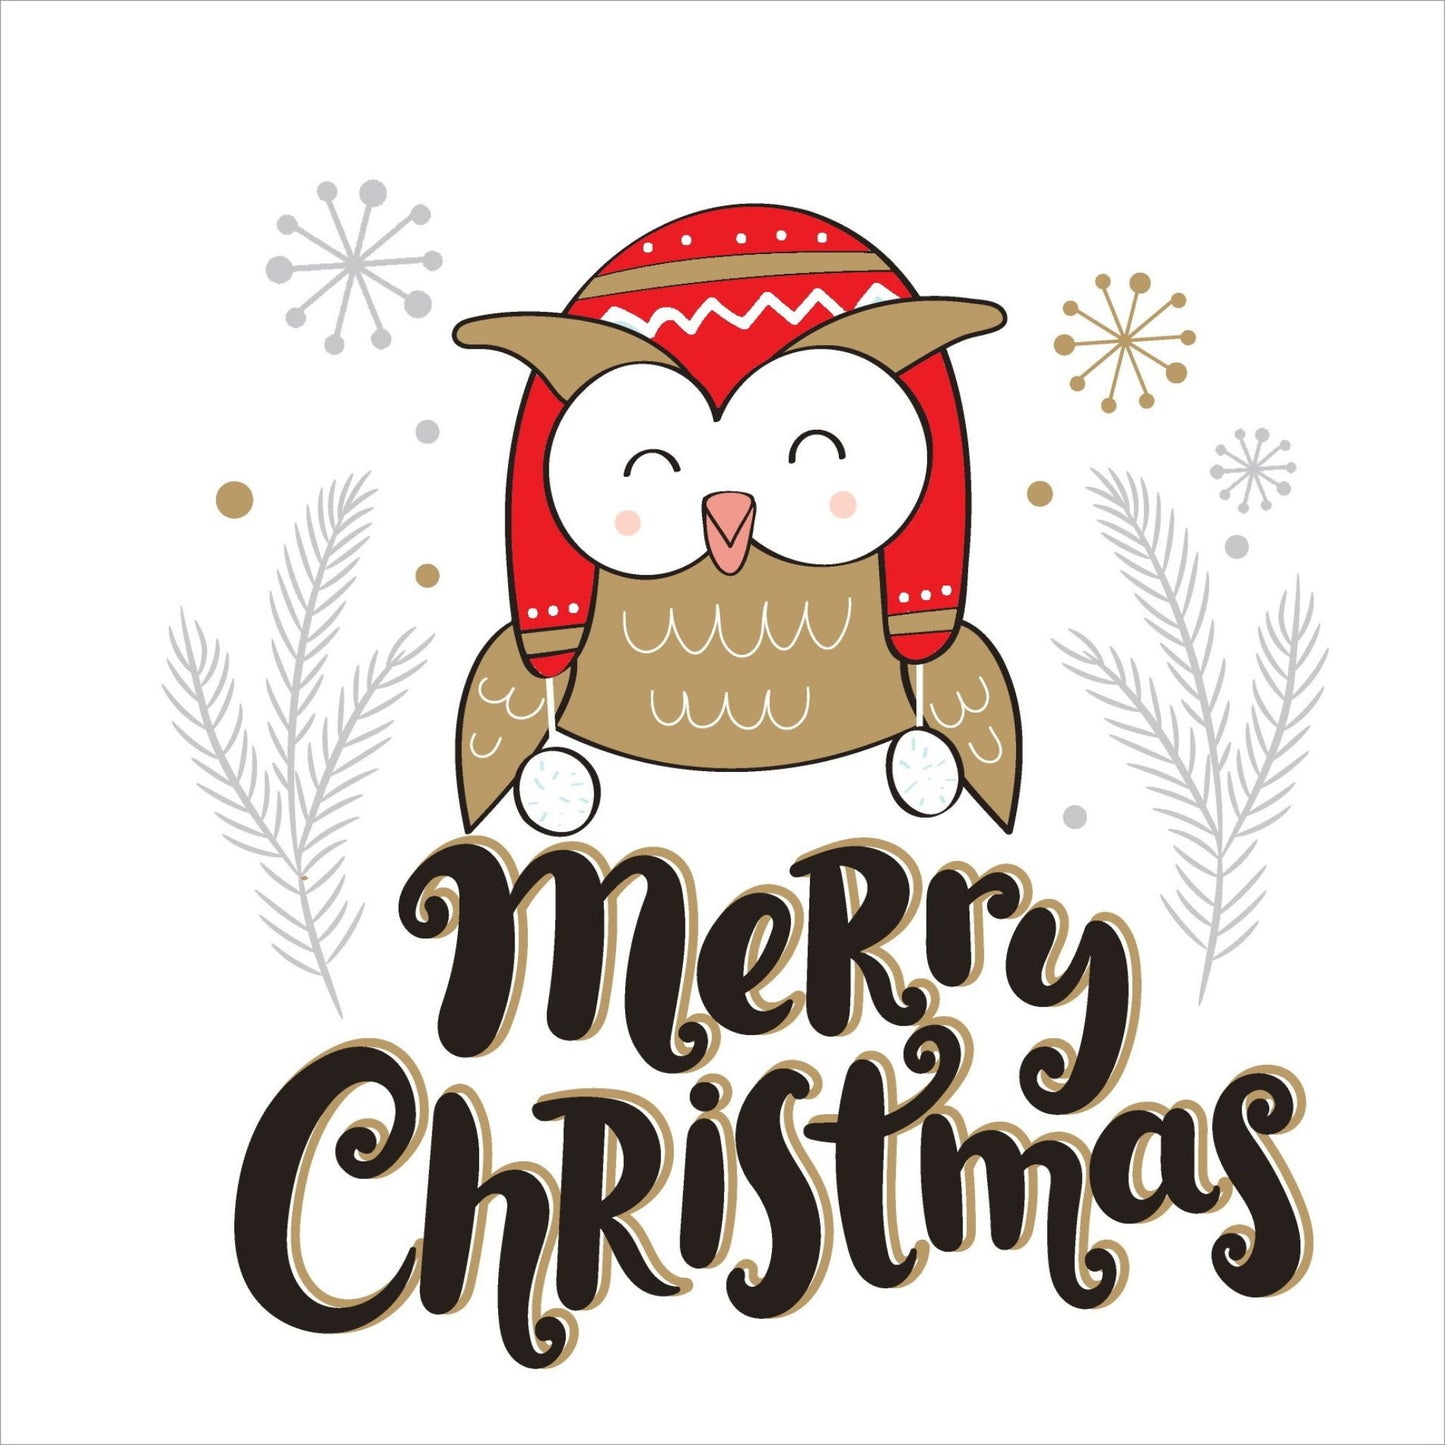 Søte julekort i håndtegnet cartoon. 10 pk. Fargemyanser i rød, grå, sort, hvit og gull. Motiv av en ugle som har på en rød lue med hvite dusker. Tekst på kort "merry christmas"